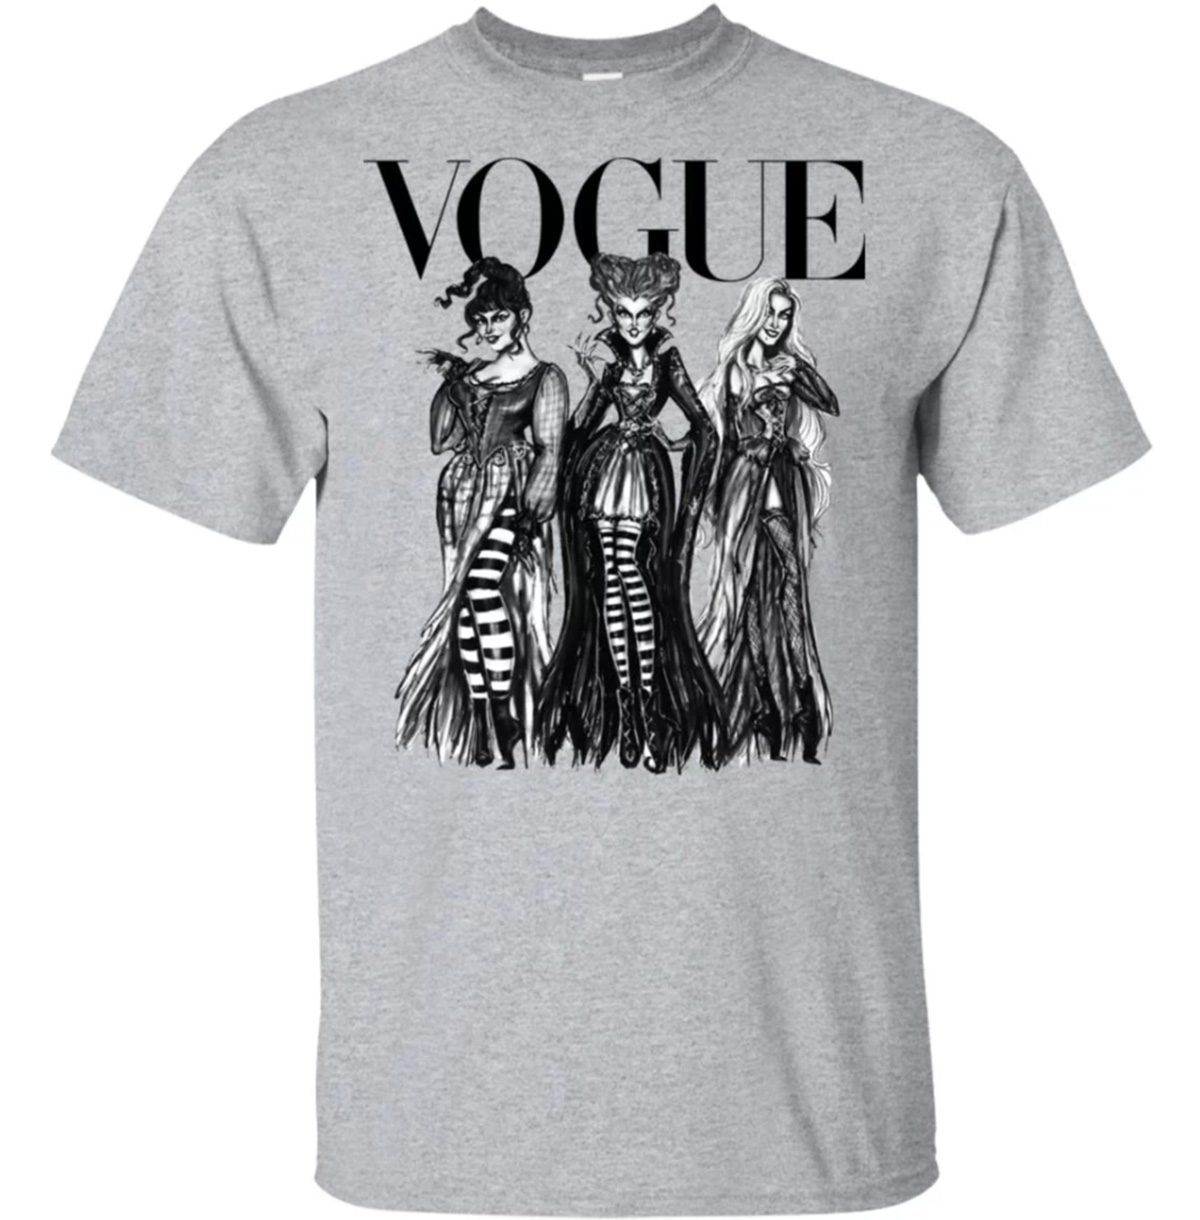 Vogue Disney Villains Shirt Reviewshirts Office